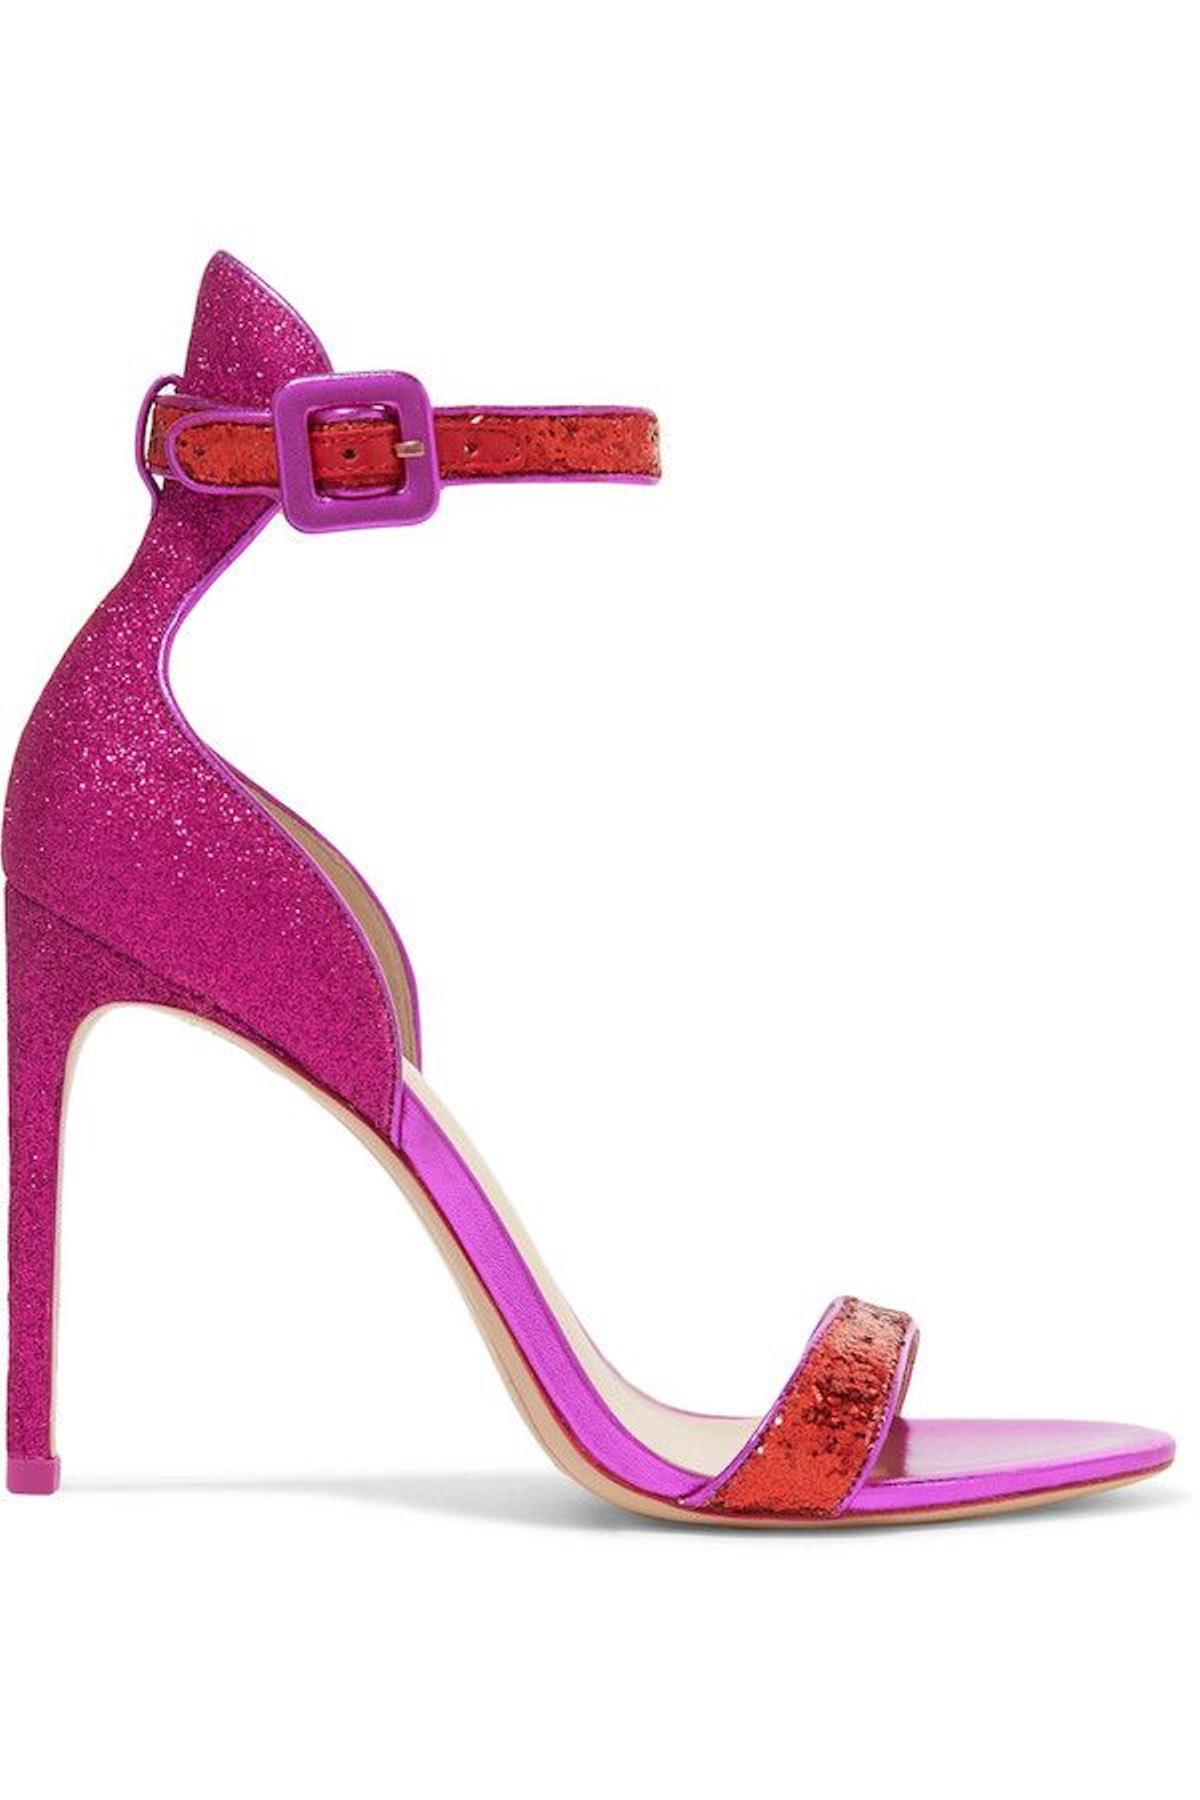 La sandalia glitter rosa